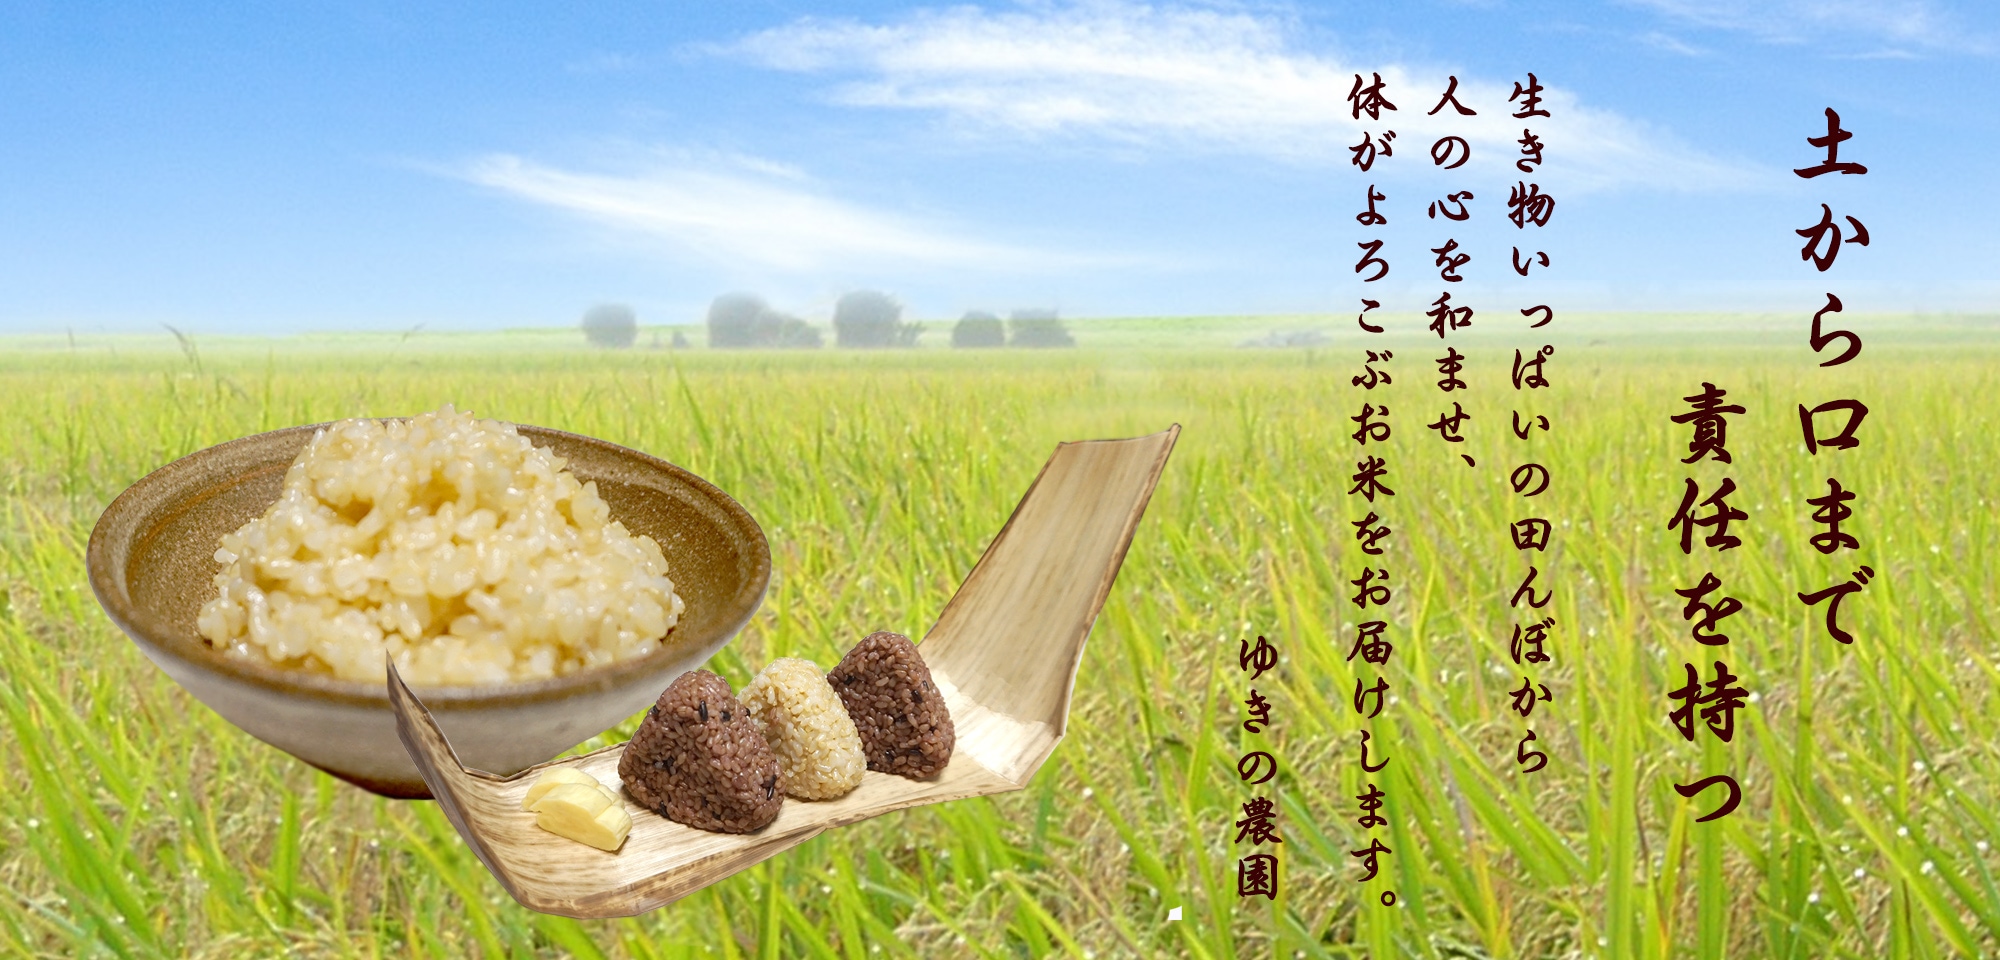 玄米食も安心,無肥料無農薬玄米専門の「ゆきの農園」